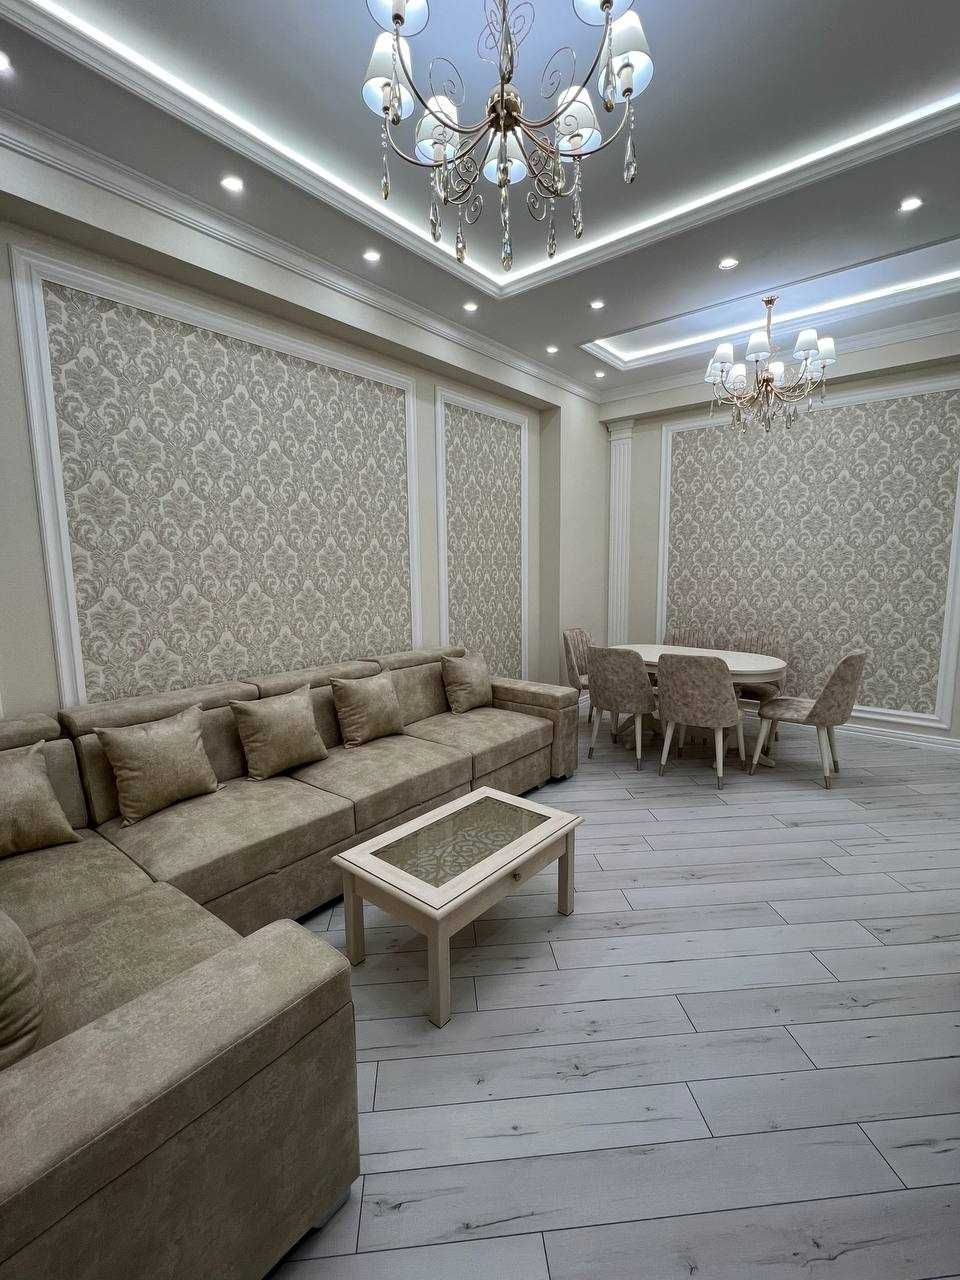 Сдается квартира в ЖК Boulevard в Tashkent City, Бульвар, Ташкент Сити